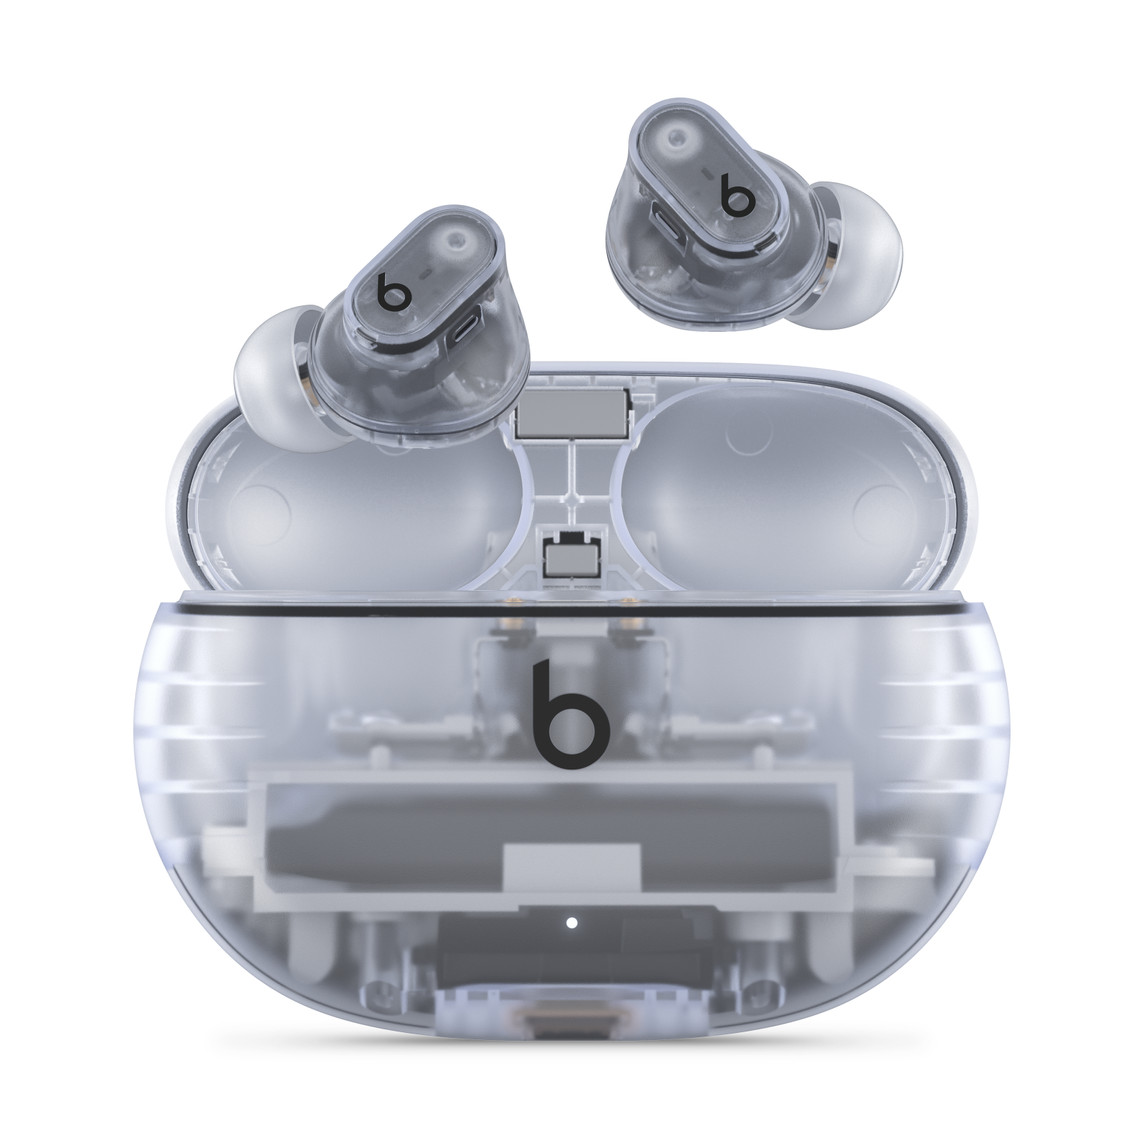 Beats Studio Buds +, fuldstændigt trådløse, støjreducerende øretelefoner i gennemsigtig med Beats-logo, ovenover praktisk opladningsetui.